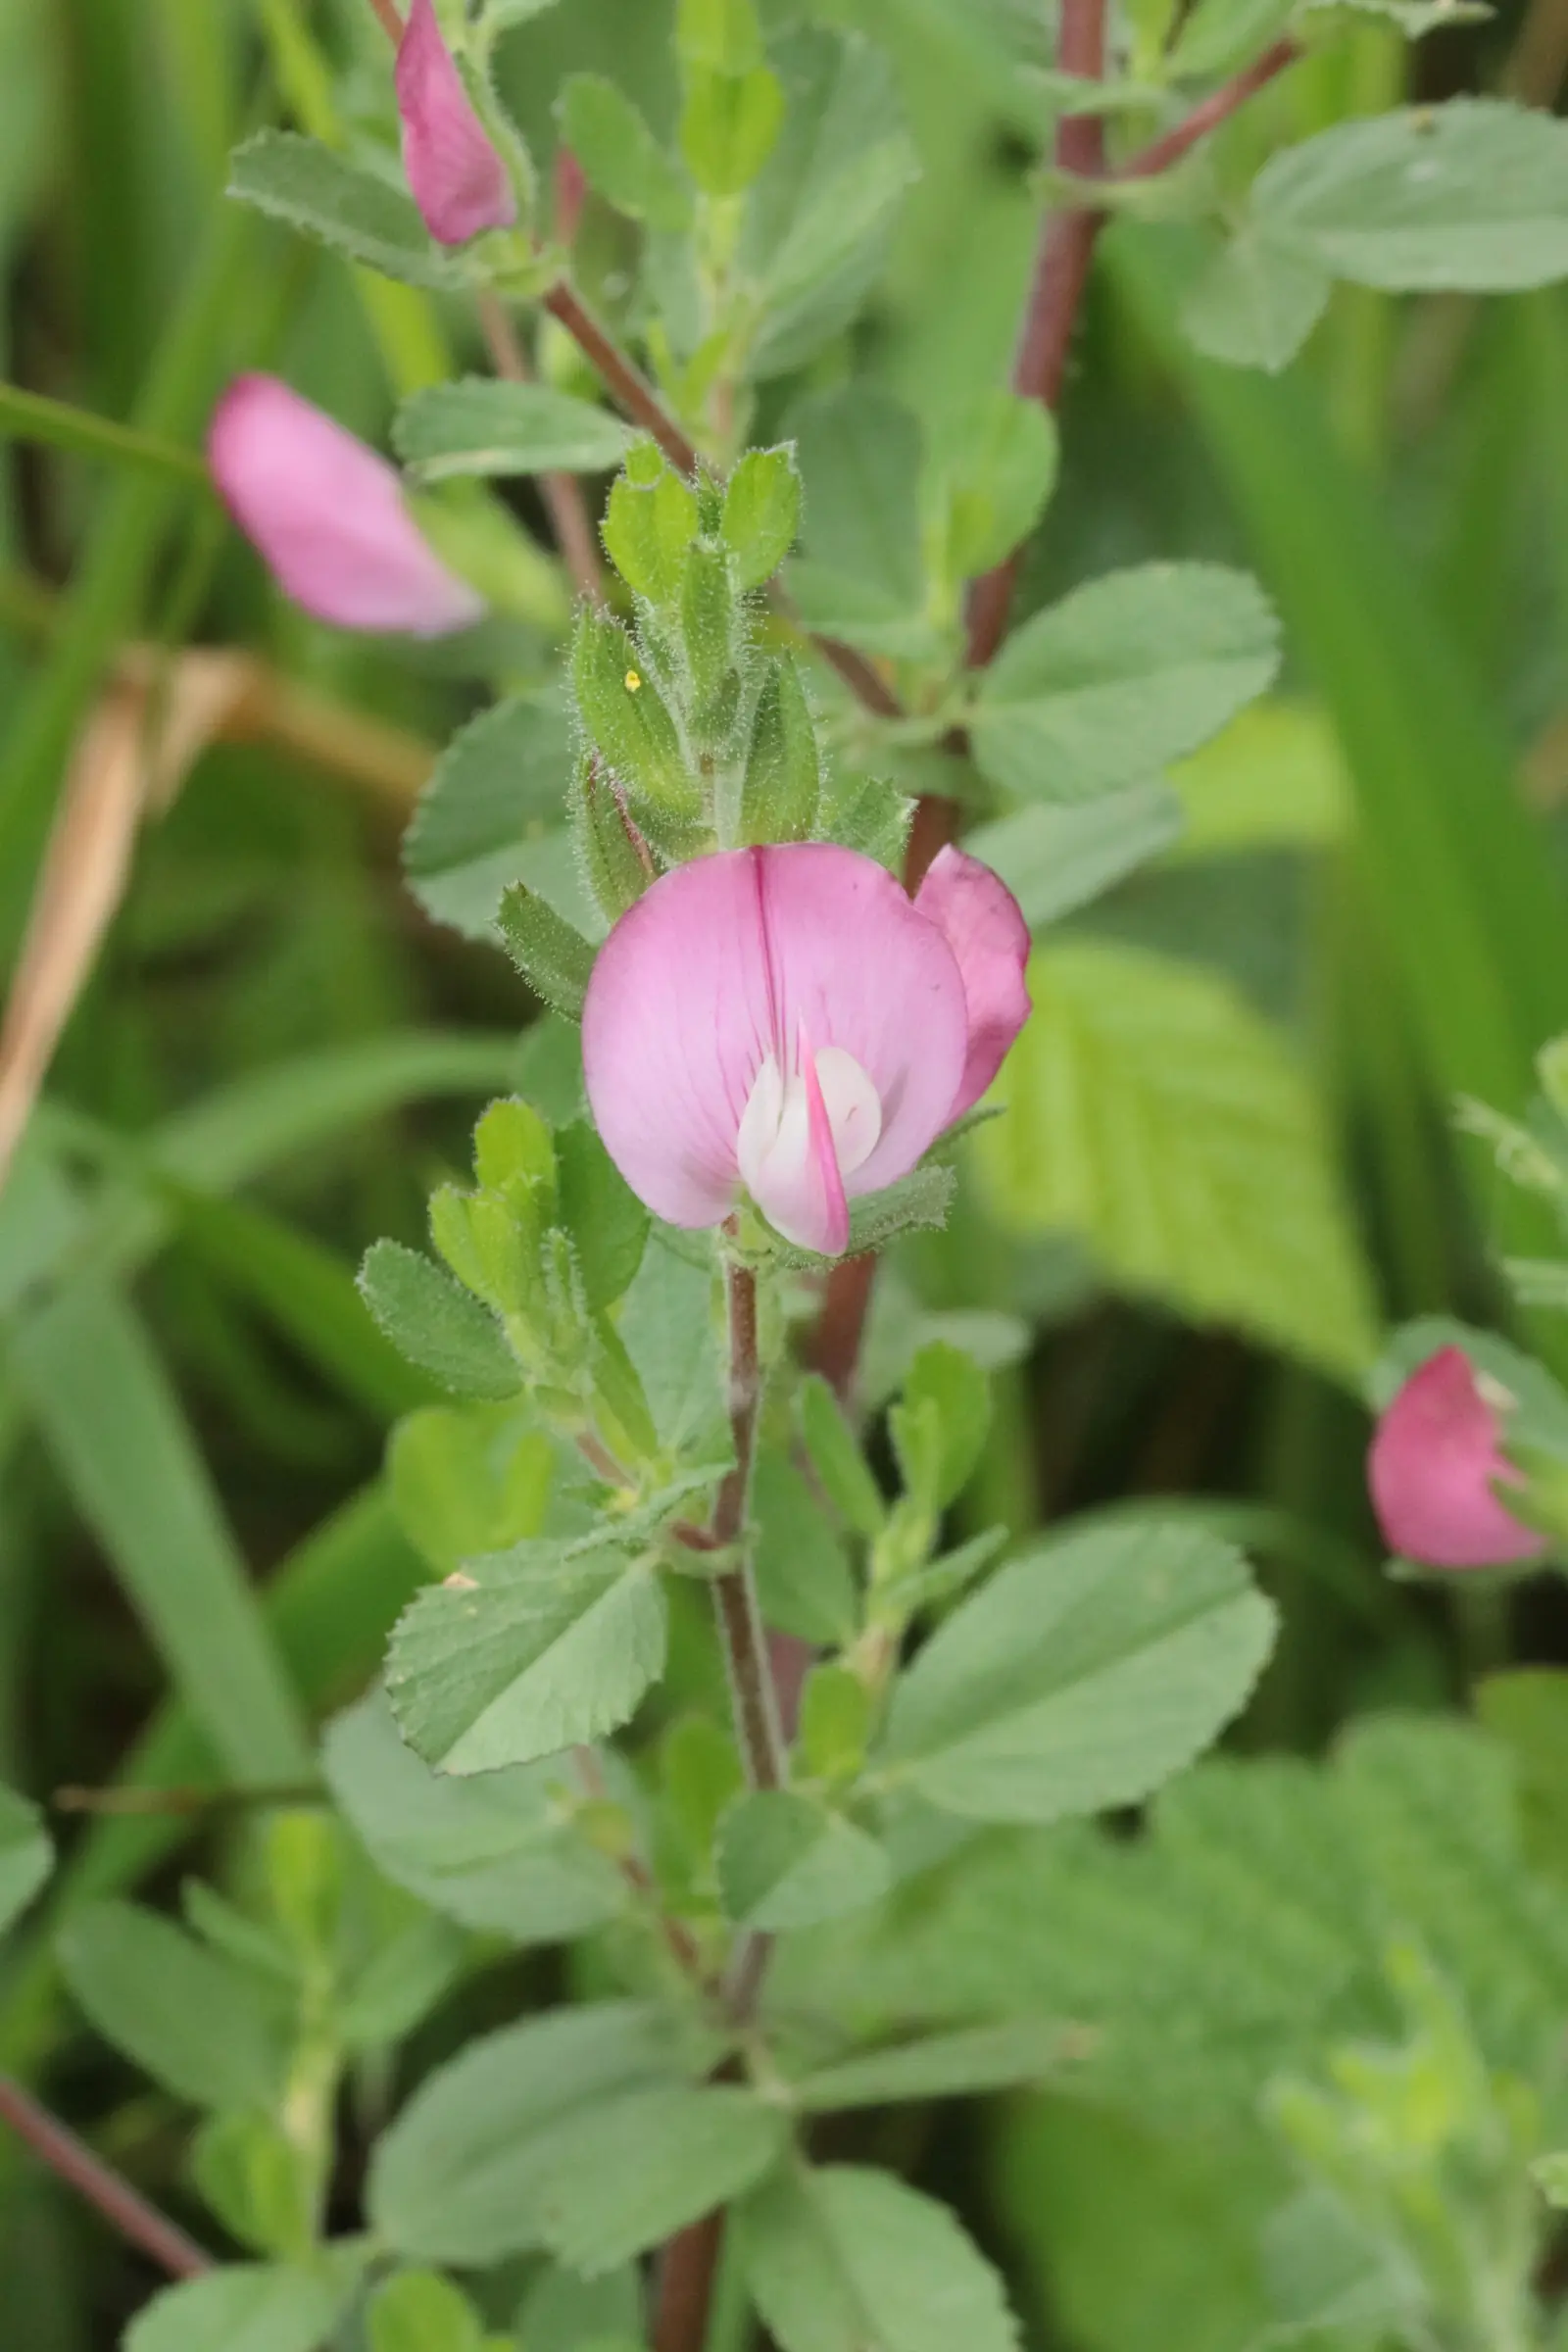 Dorniger Hauhechel - die rosa gefärbte Blüte besteht aus zwei schalenförmigen Blütenblättern die in der Mitte zu einem Dorn zusammengewachsen sind.